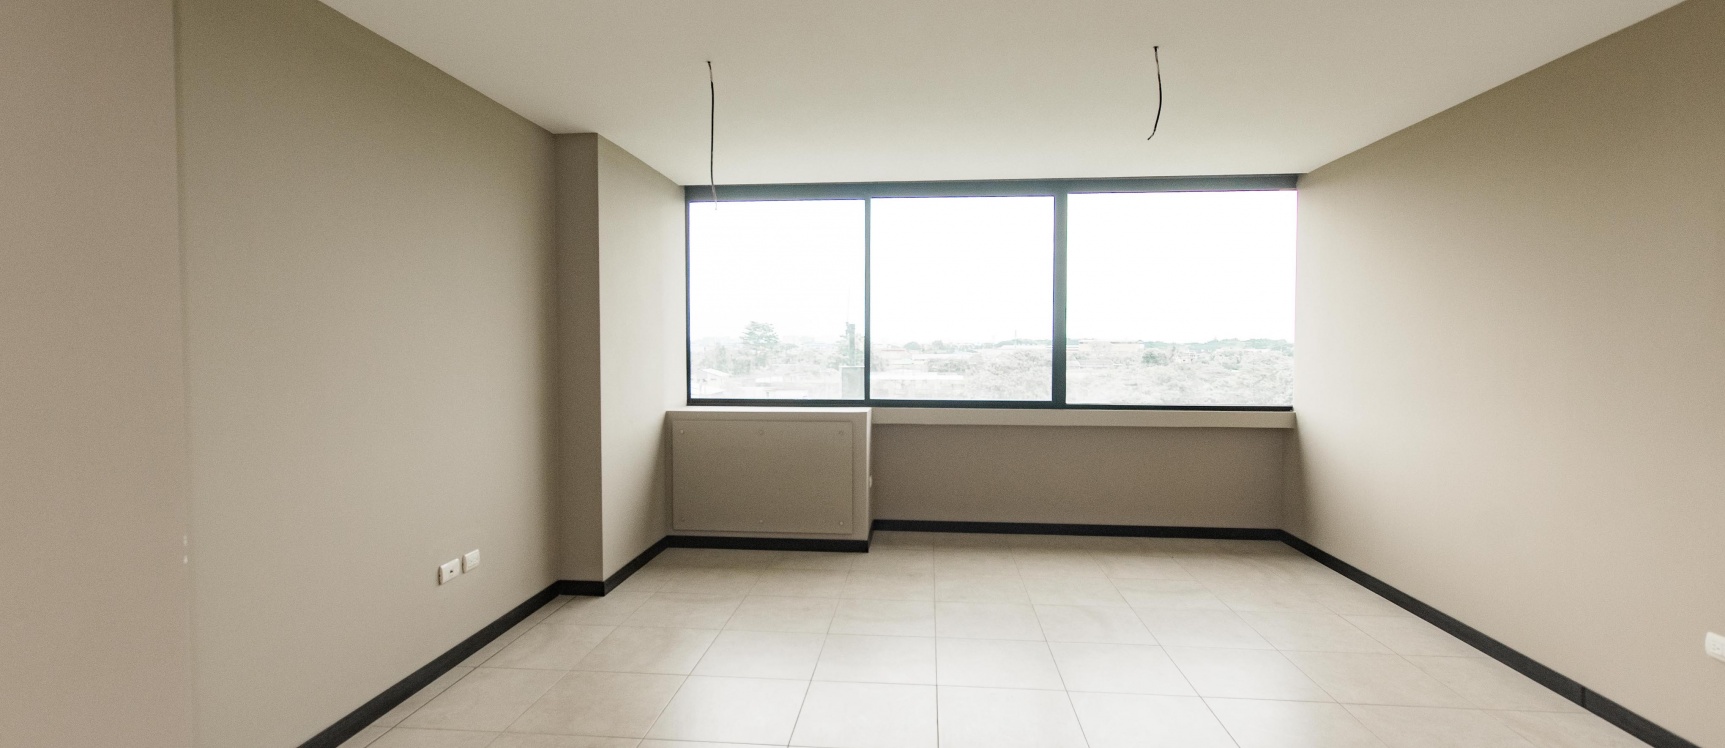 GeoBienes - Departamento en venta ubicado en Torres de Bellini, Guayaquil - Plusvalia Guayaquil Casas de venta y alquiler Inmobiliaria Ecuador